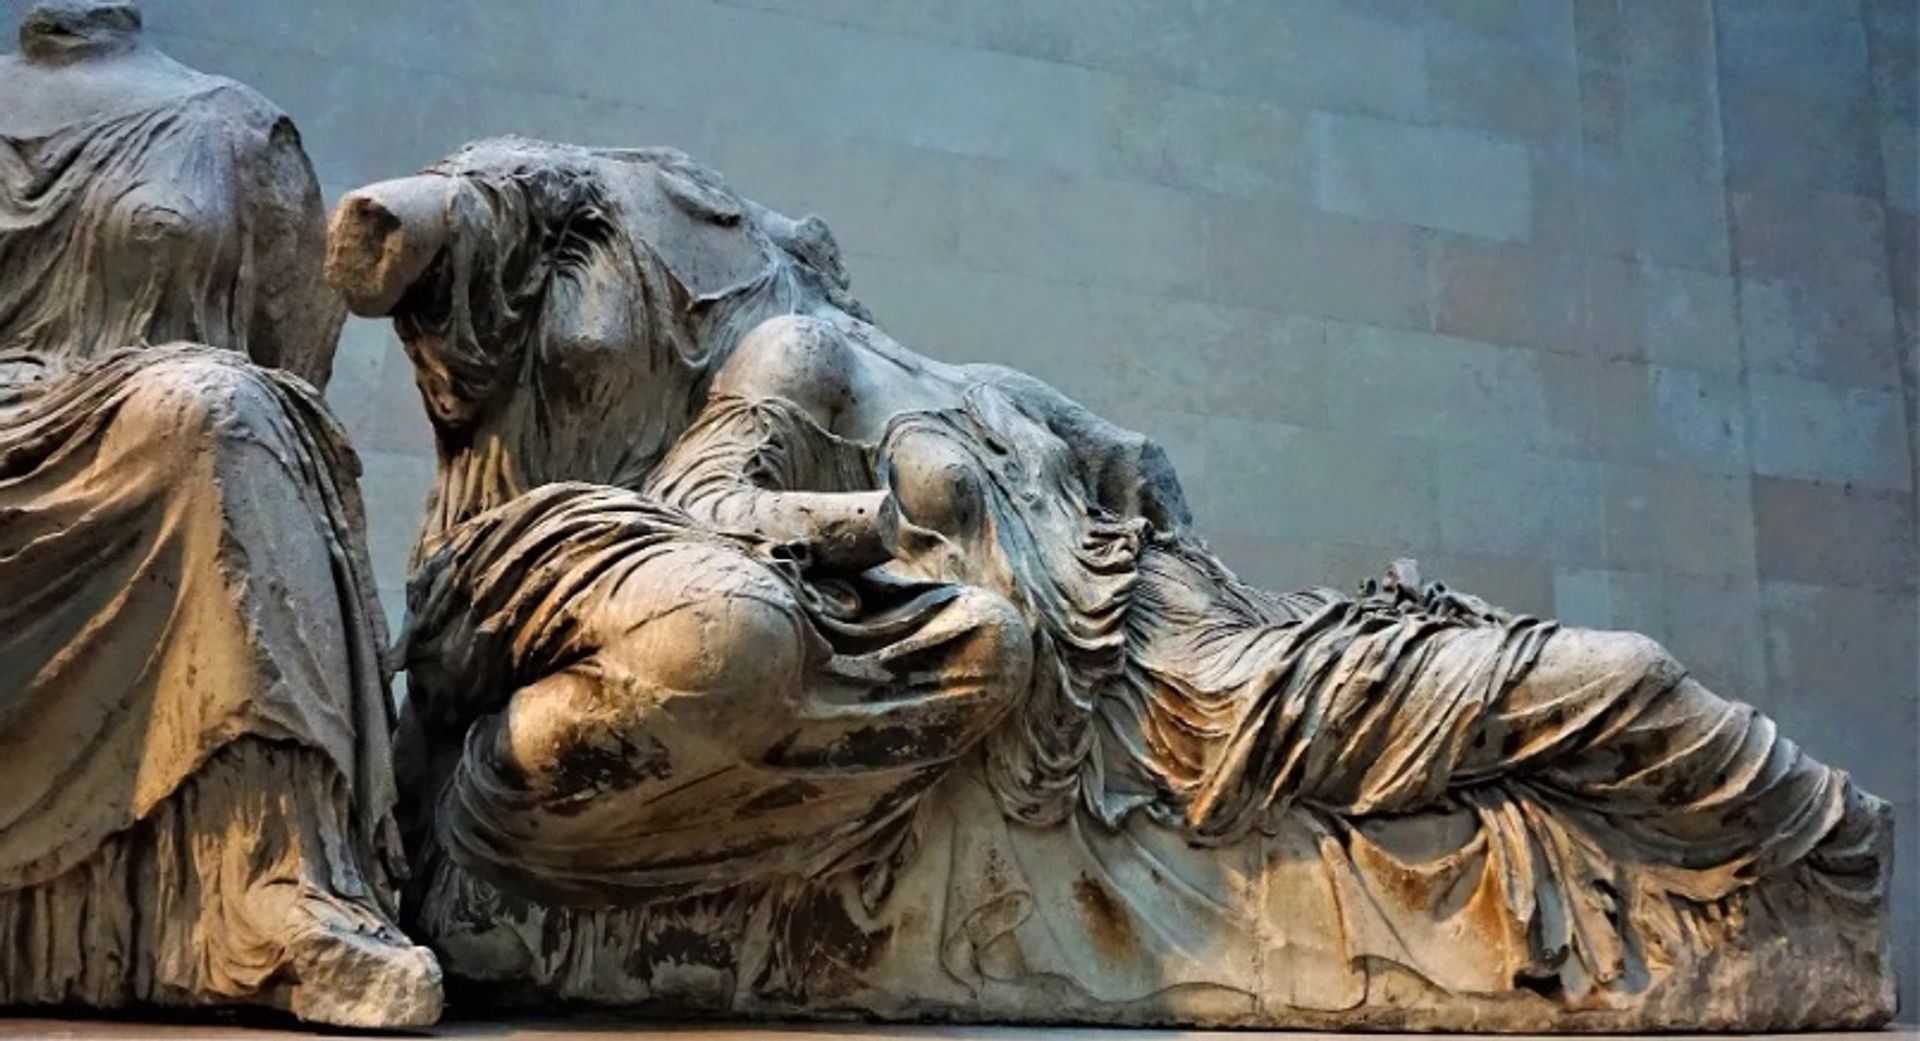 פסלי הפרתנון בגלריה דוווין במוזיאון הבריטי של לונדון

צילום: Joyofmuseums